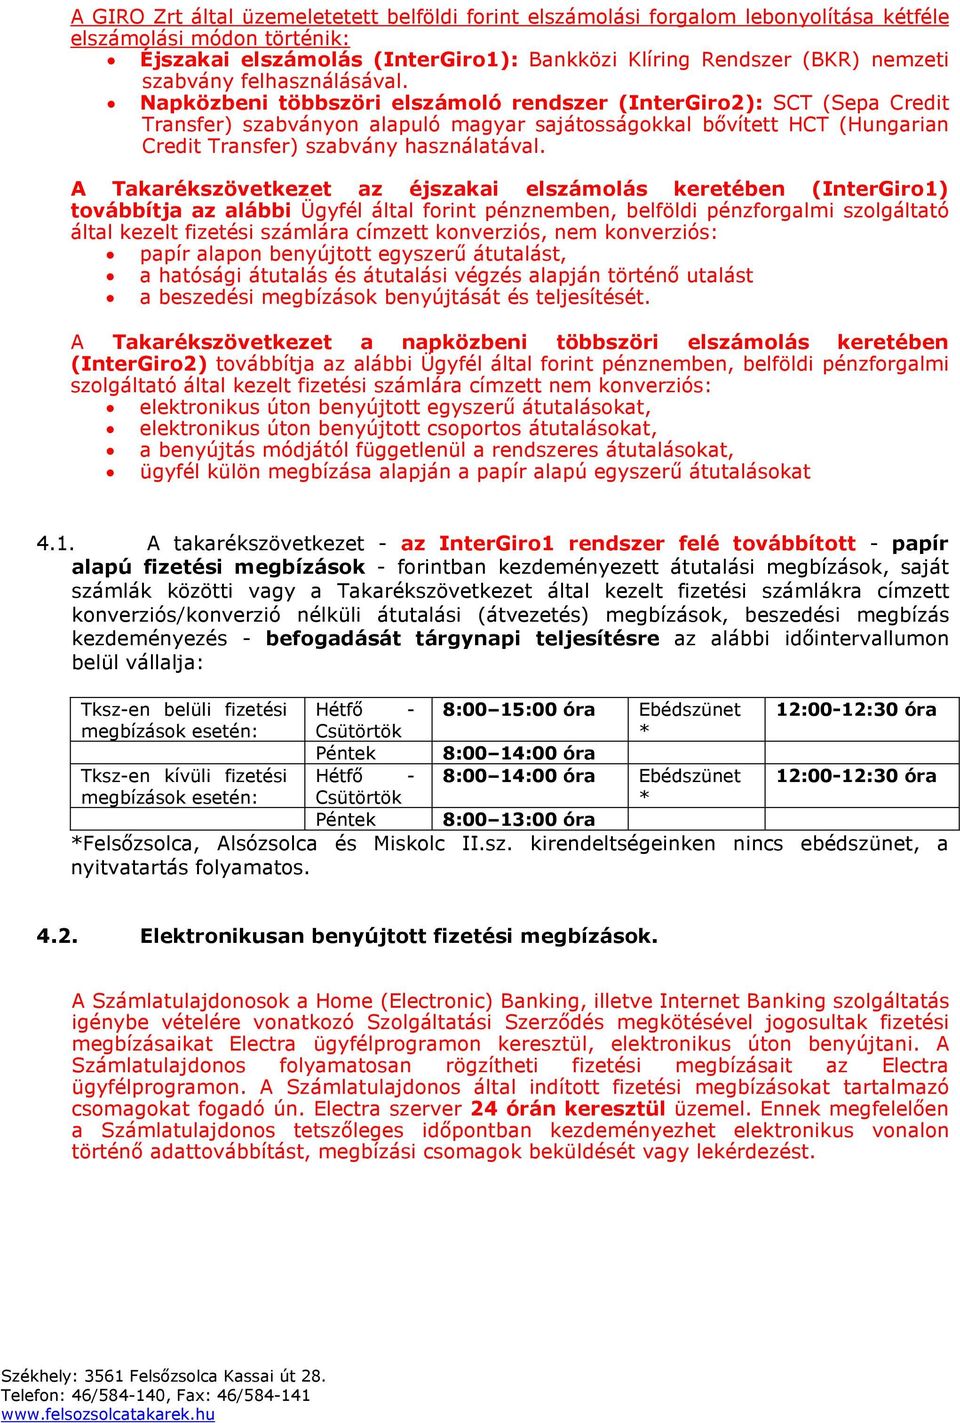 Napközbeni többszöri elszámoló rendszer (InterGiro2): SCT (Sepa Credit Transfer) szabványon alapuló magyar sajátosságokkal bővített HCT (Hungarian Credit Transfer) szabvány használatával.